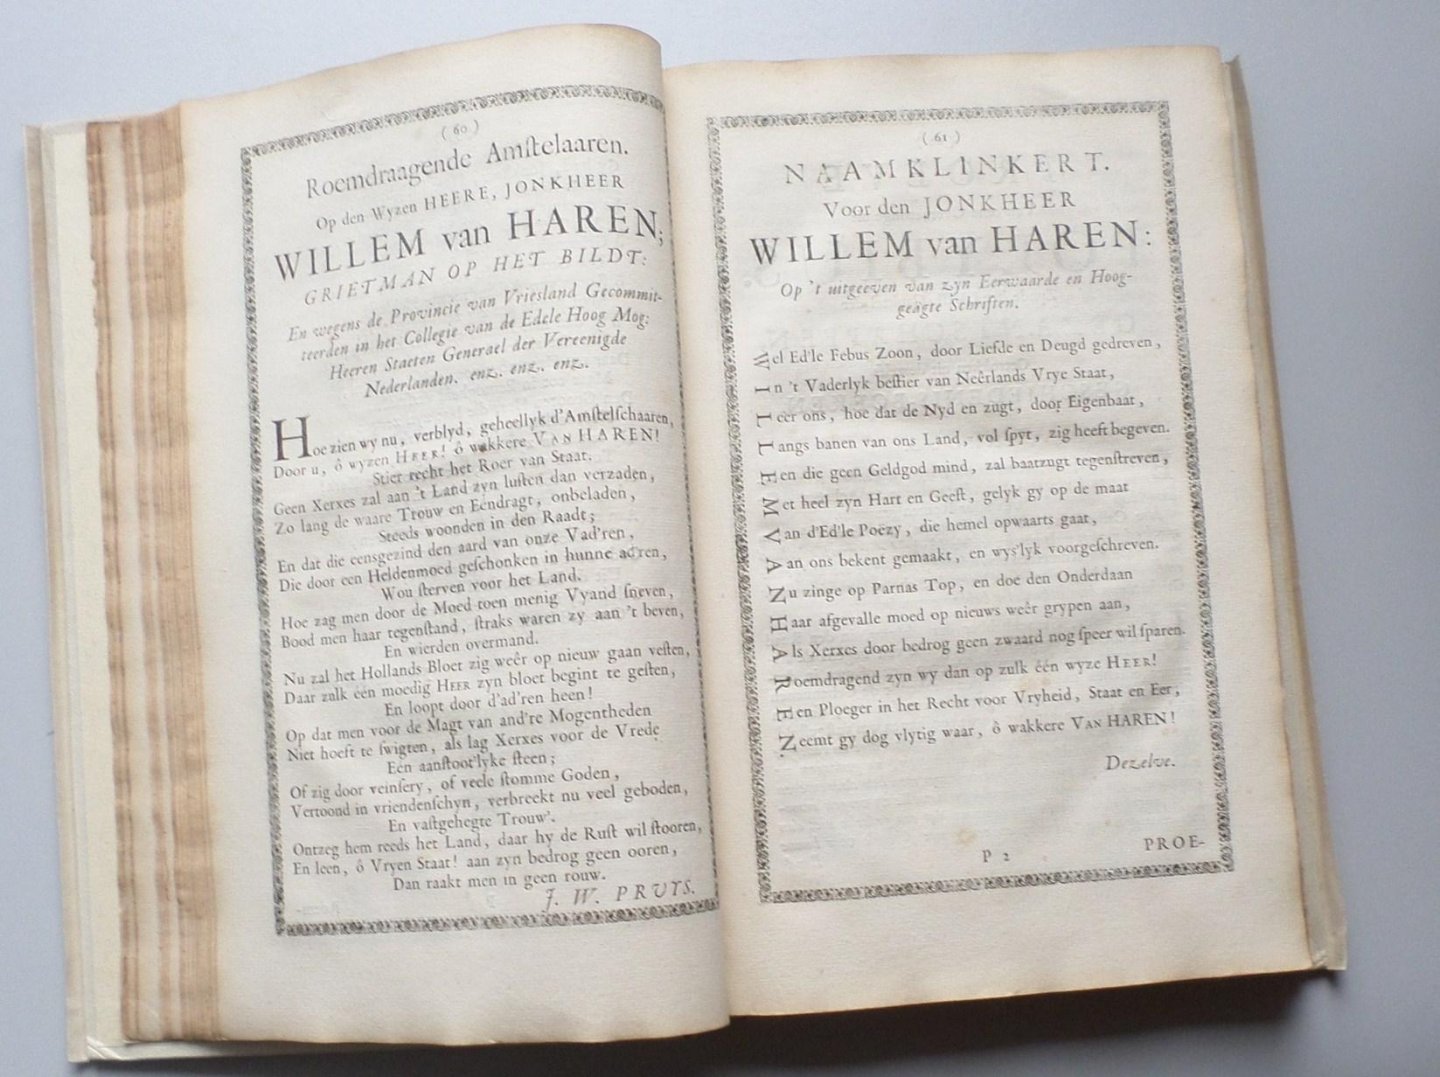 Willem van Haren en diverse andere auteurs - Verzameling van Gedichten, van, voor en tegen Jr. Willem van Haren grietman op Het Bildt (...)